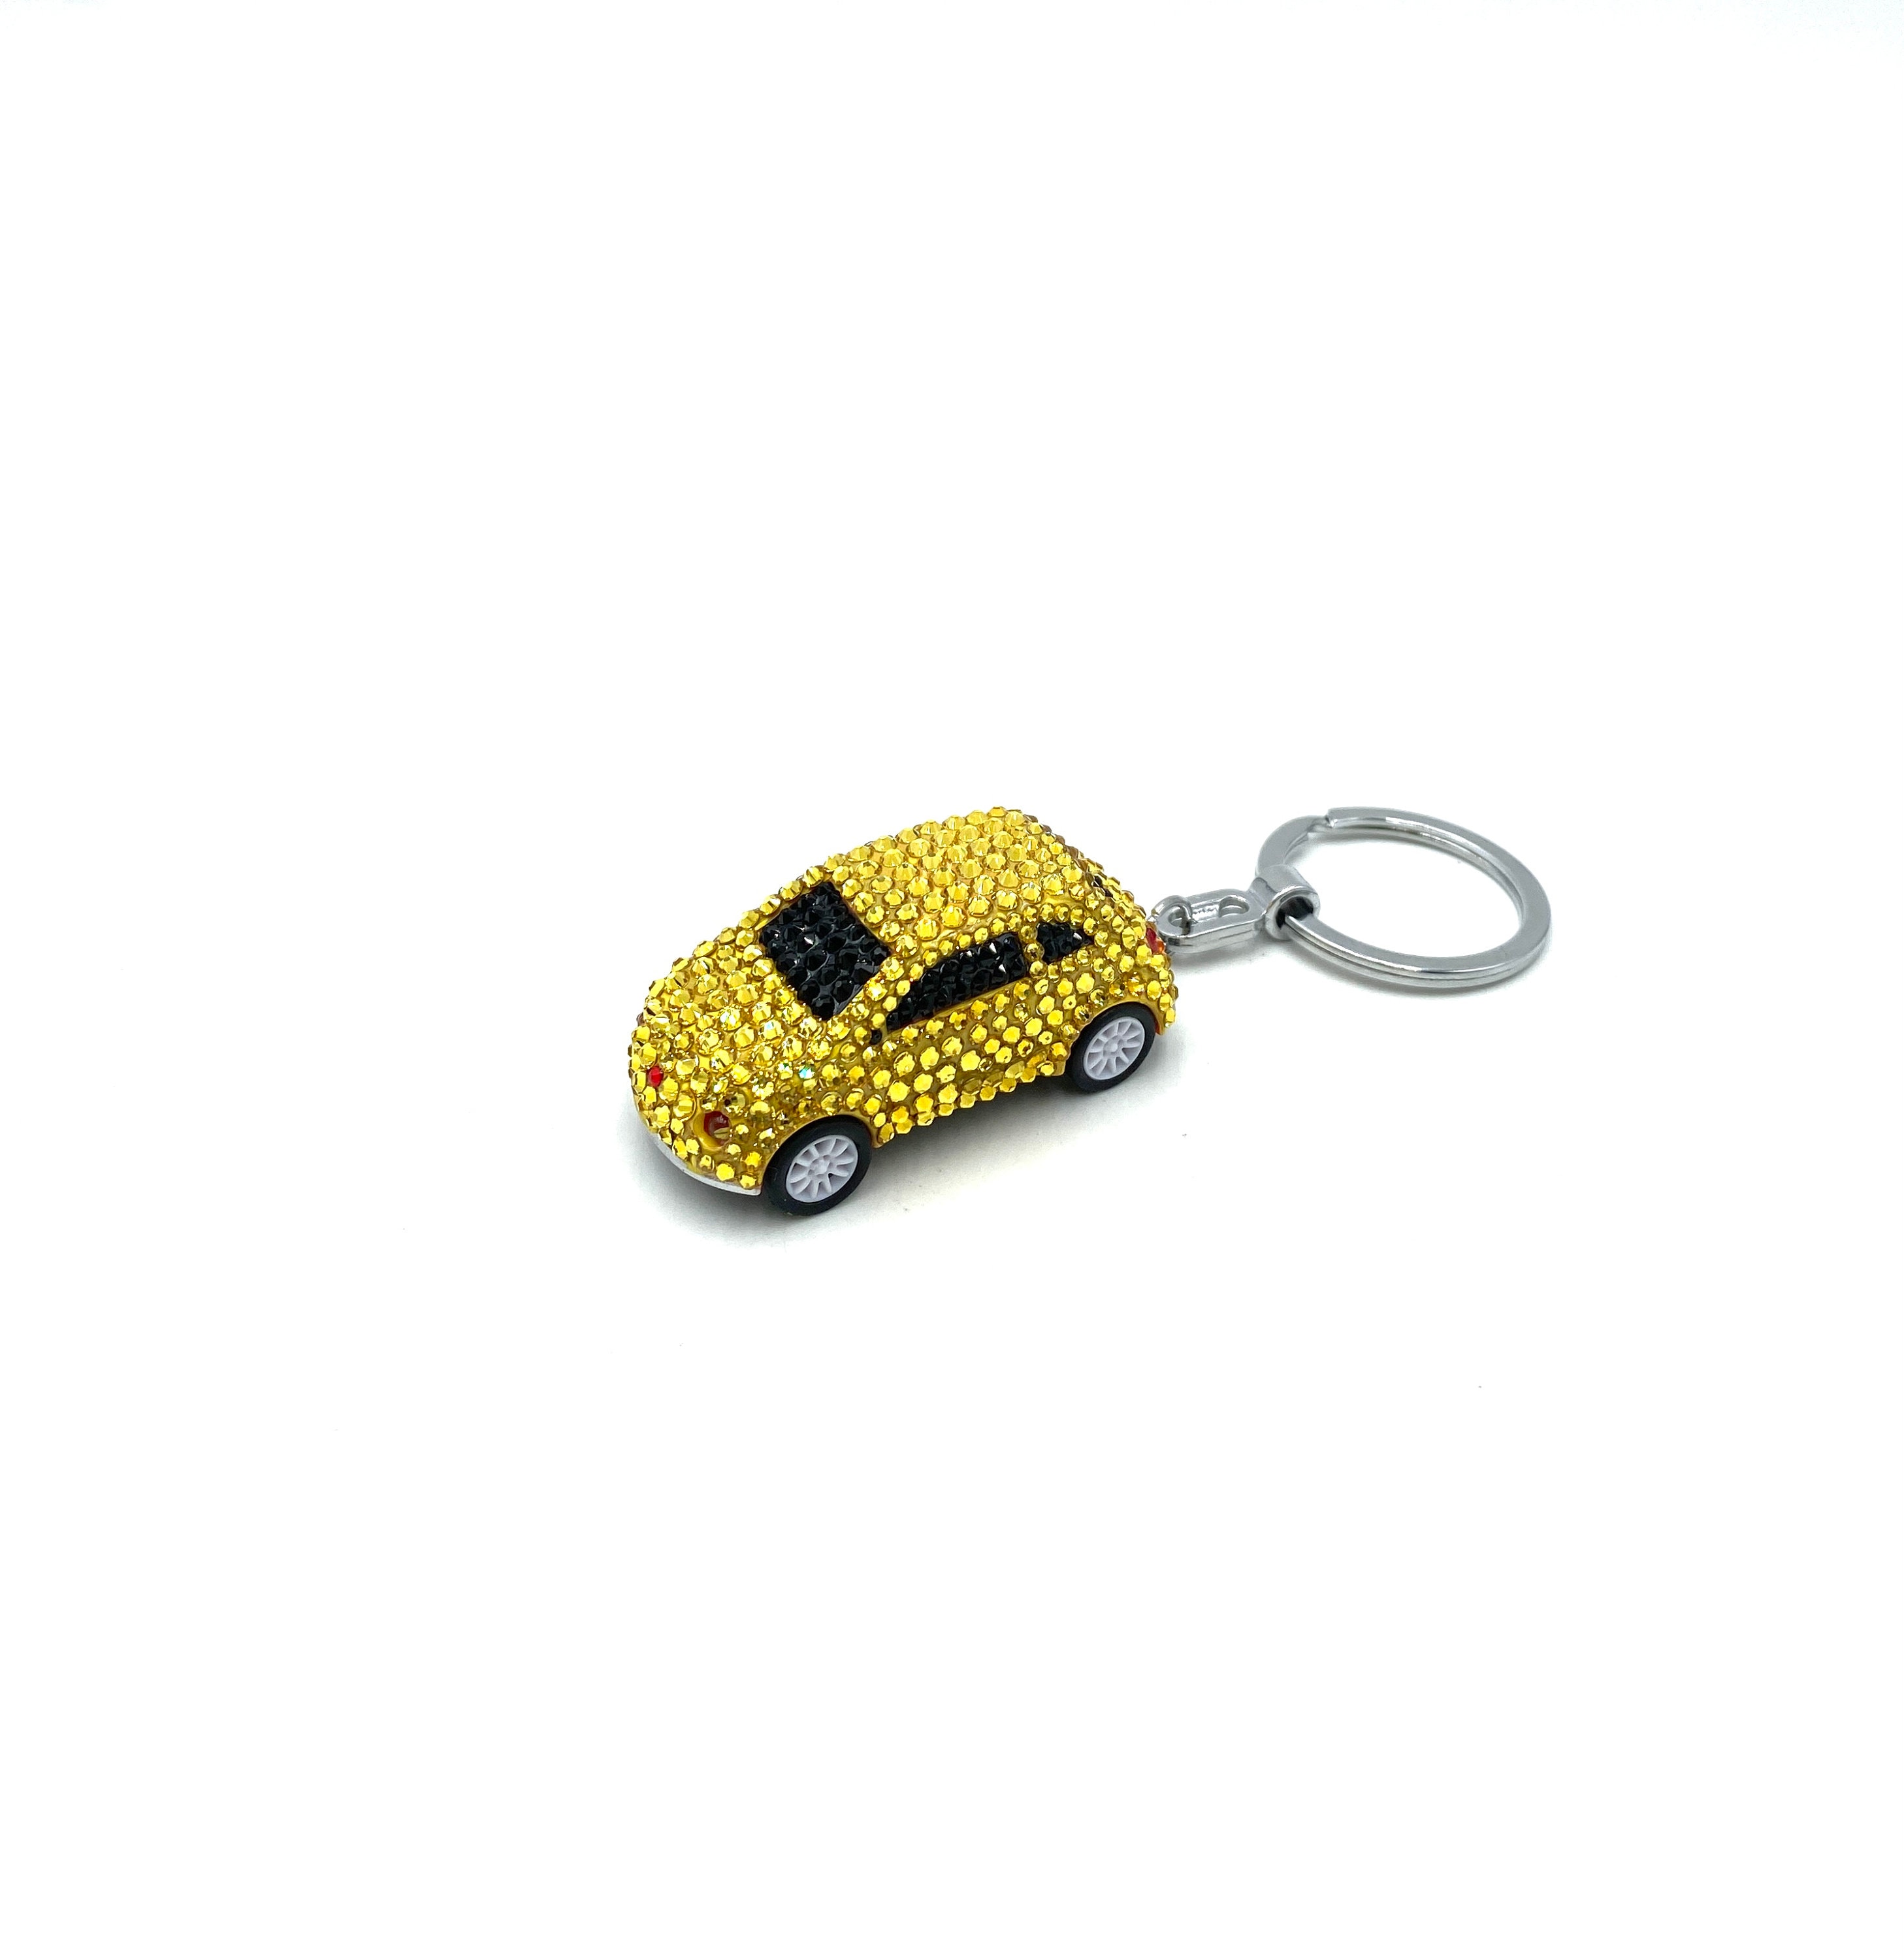 Generic Porte-clés de voiture porte-clés avec logo Fiat à prix pas cher